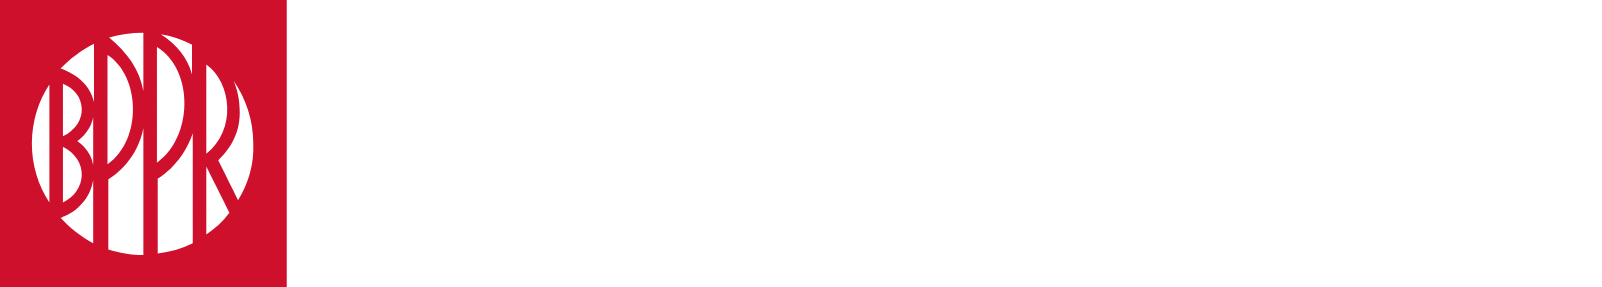 Banco Popular  logo large for dark backgrounds (transparent PNG)